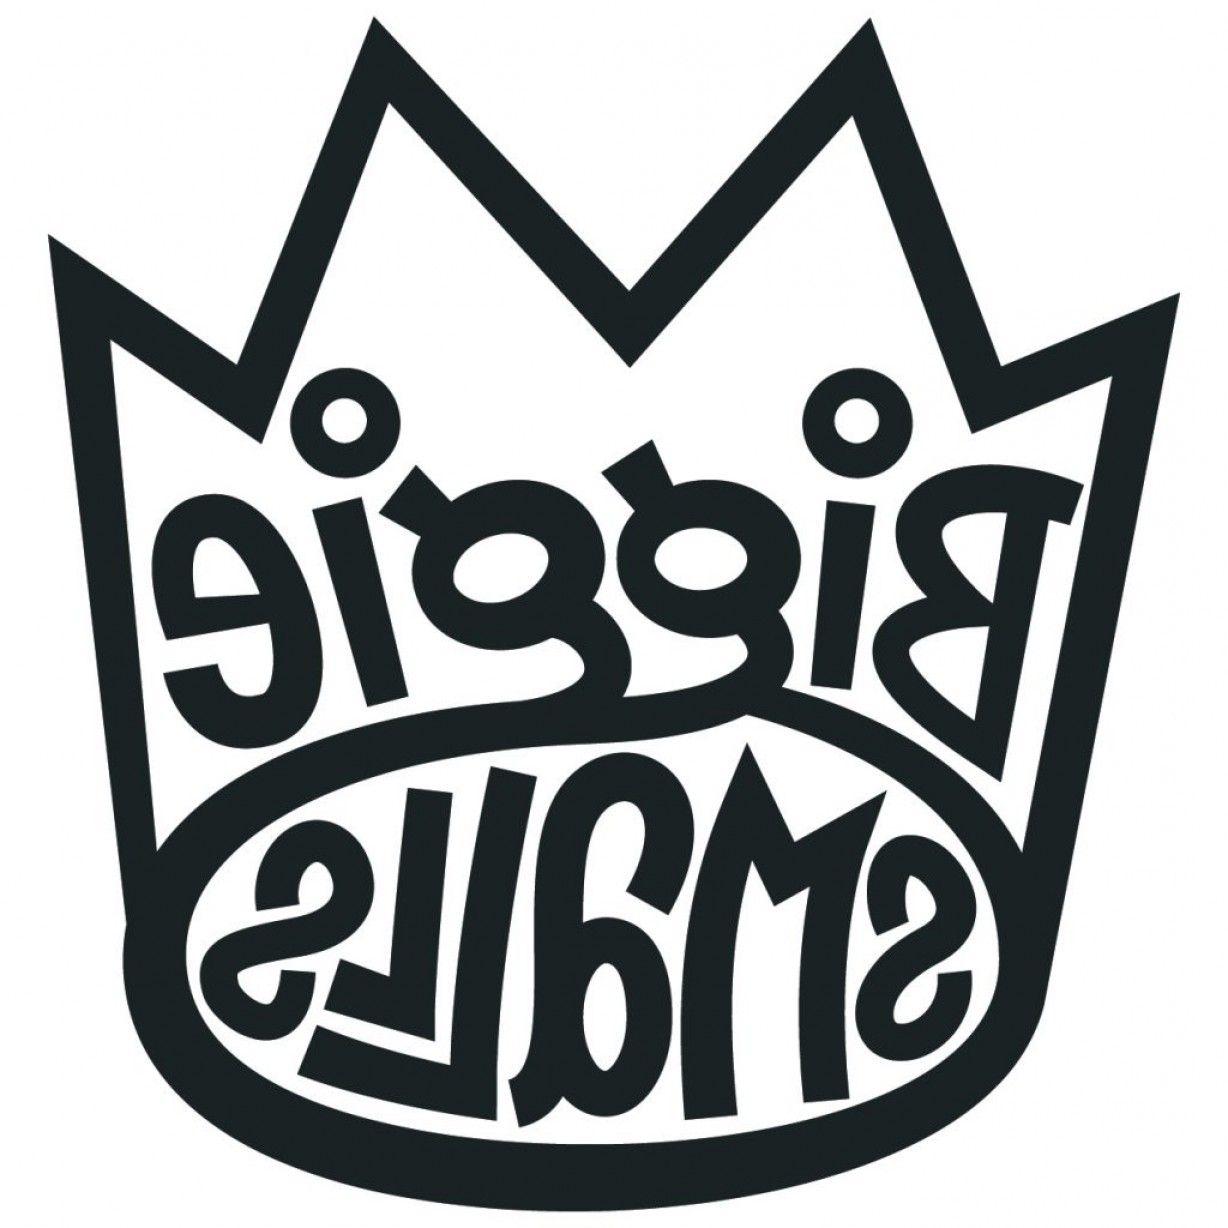 Biggie Logo - Biggie Smalls Black And White Crown | SOIDERGI